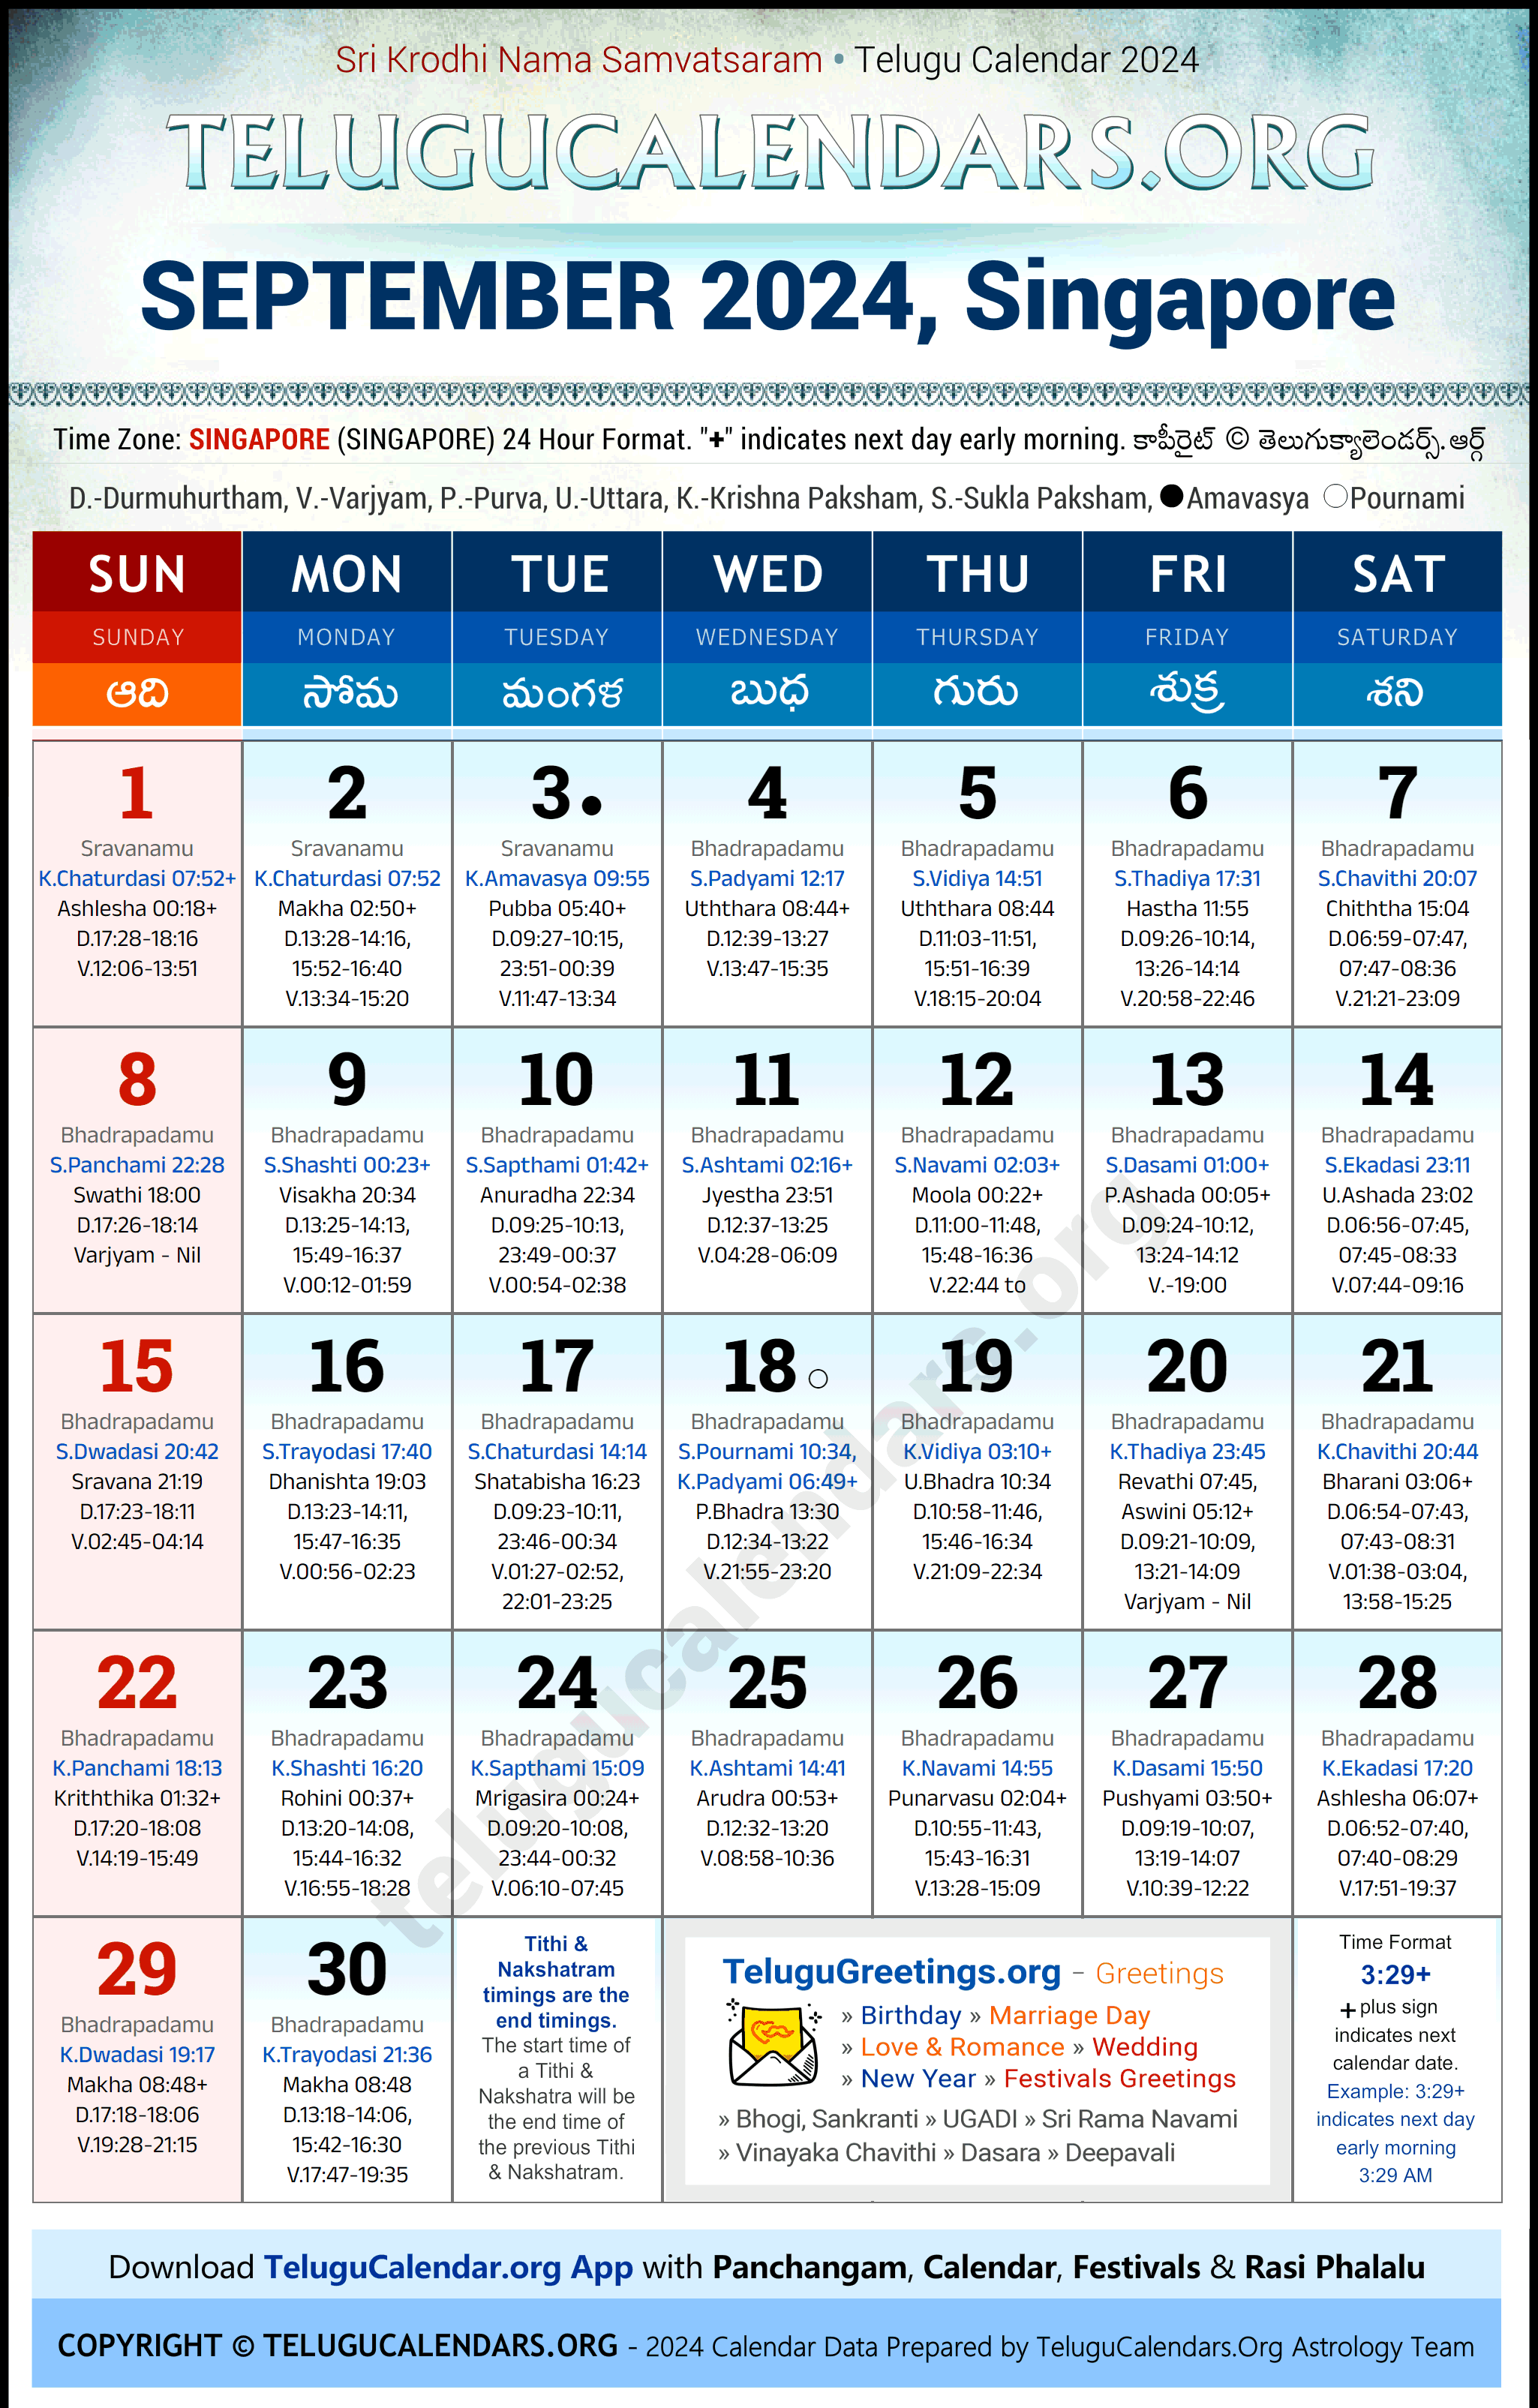 Telugu Calendar 2024 September Festivals for Singapore